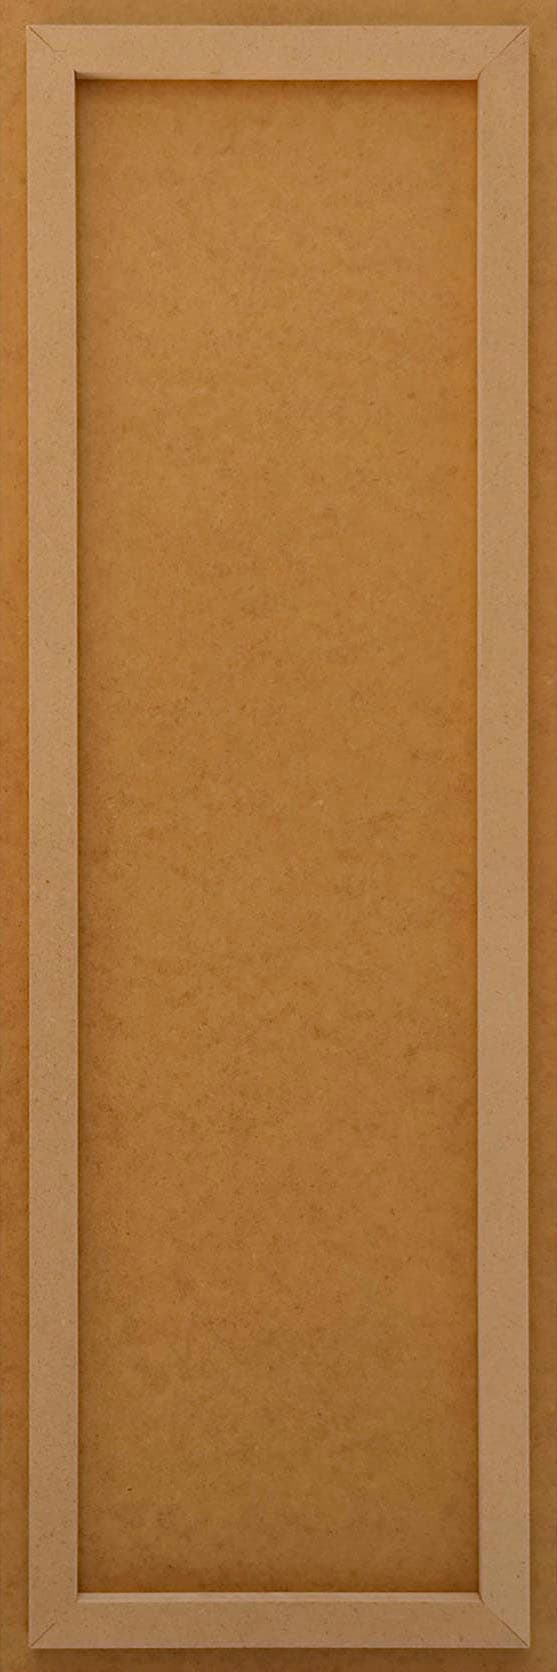 Reinders! Deco-Panel »Das Leben«, Spruch 30x90 cm